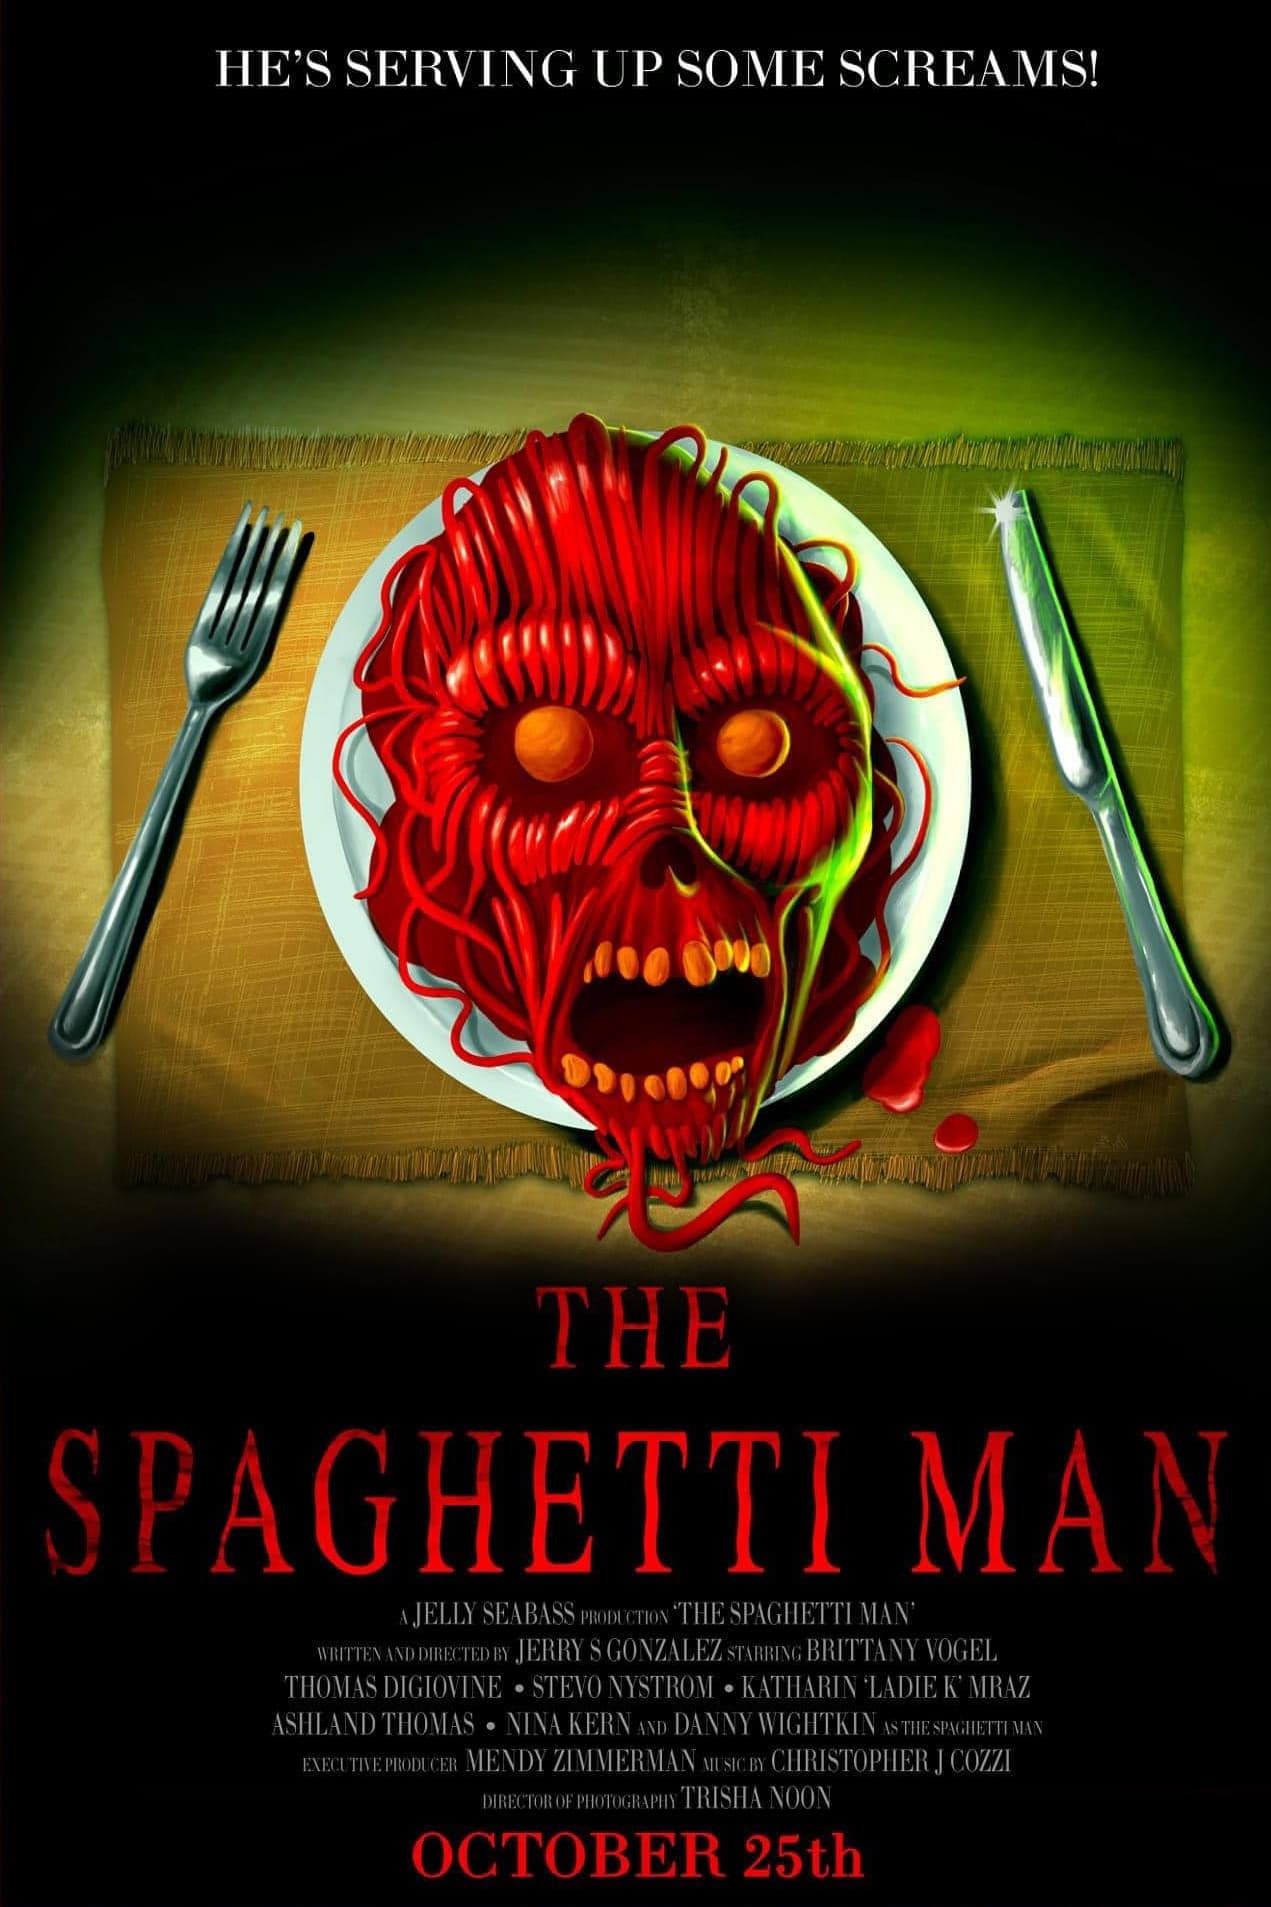 The Spaghetti Man